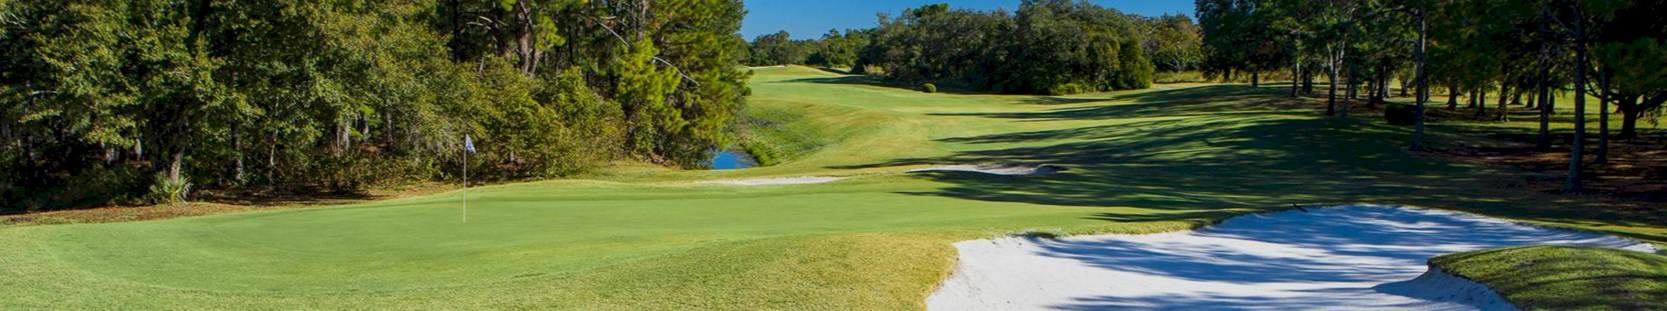 Disney's Oak Trail Golf Course  - Disney Golf Getaways from Academy Travel